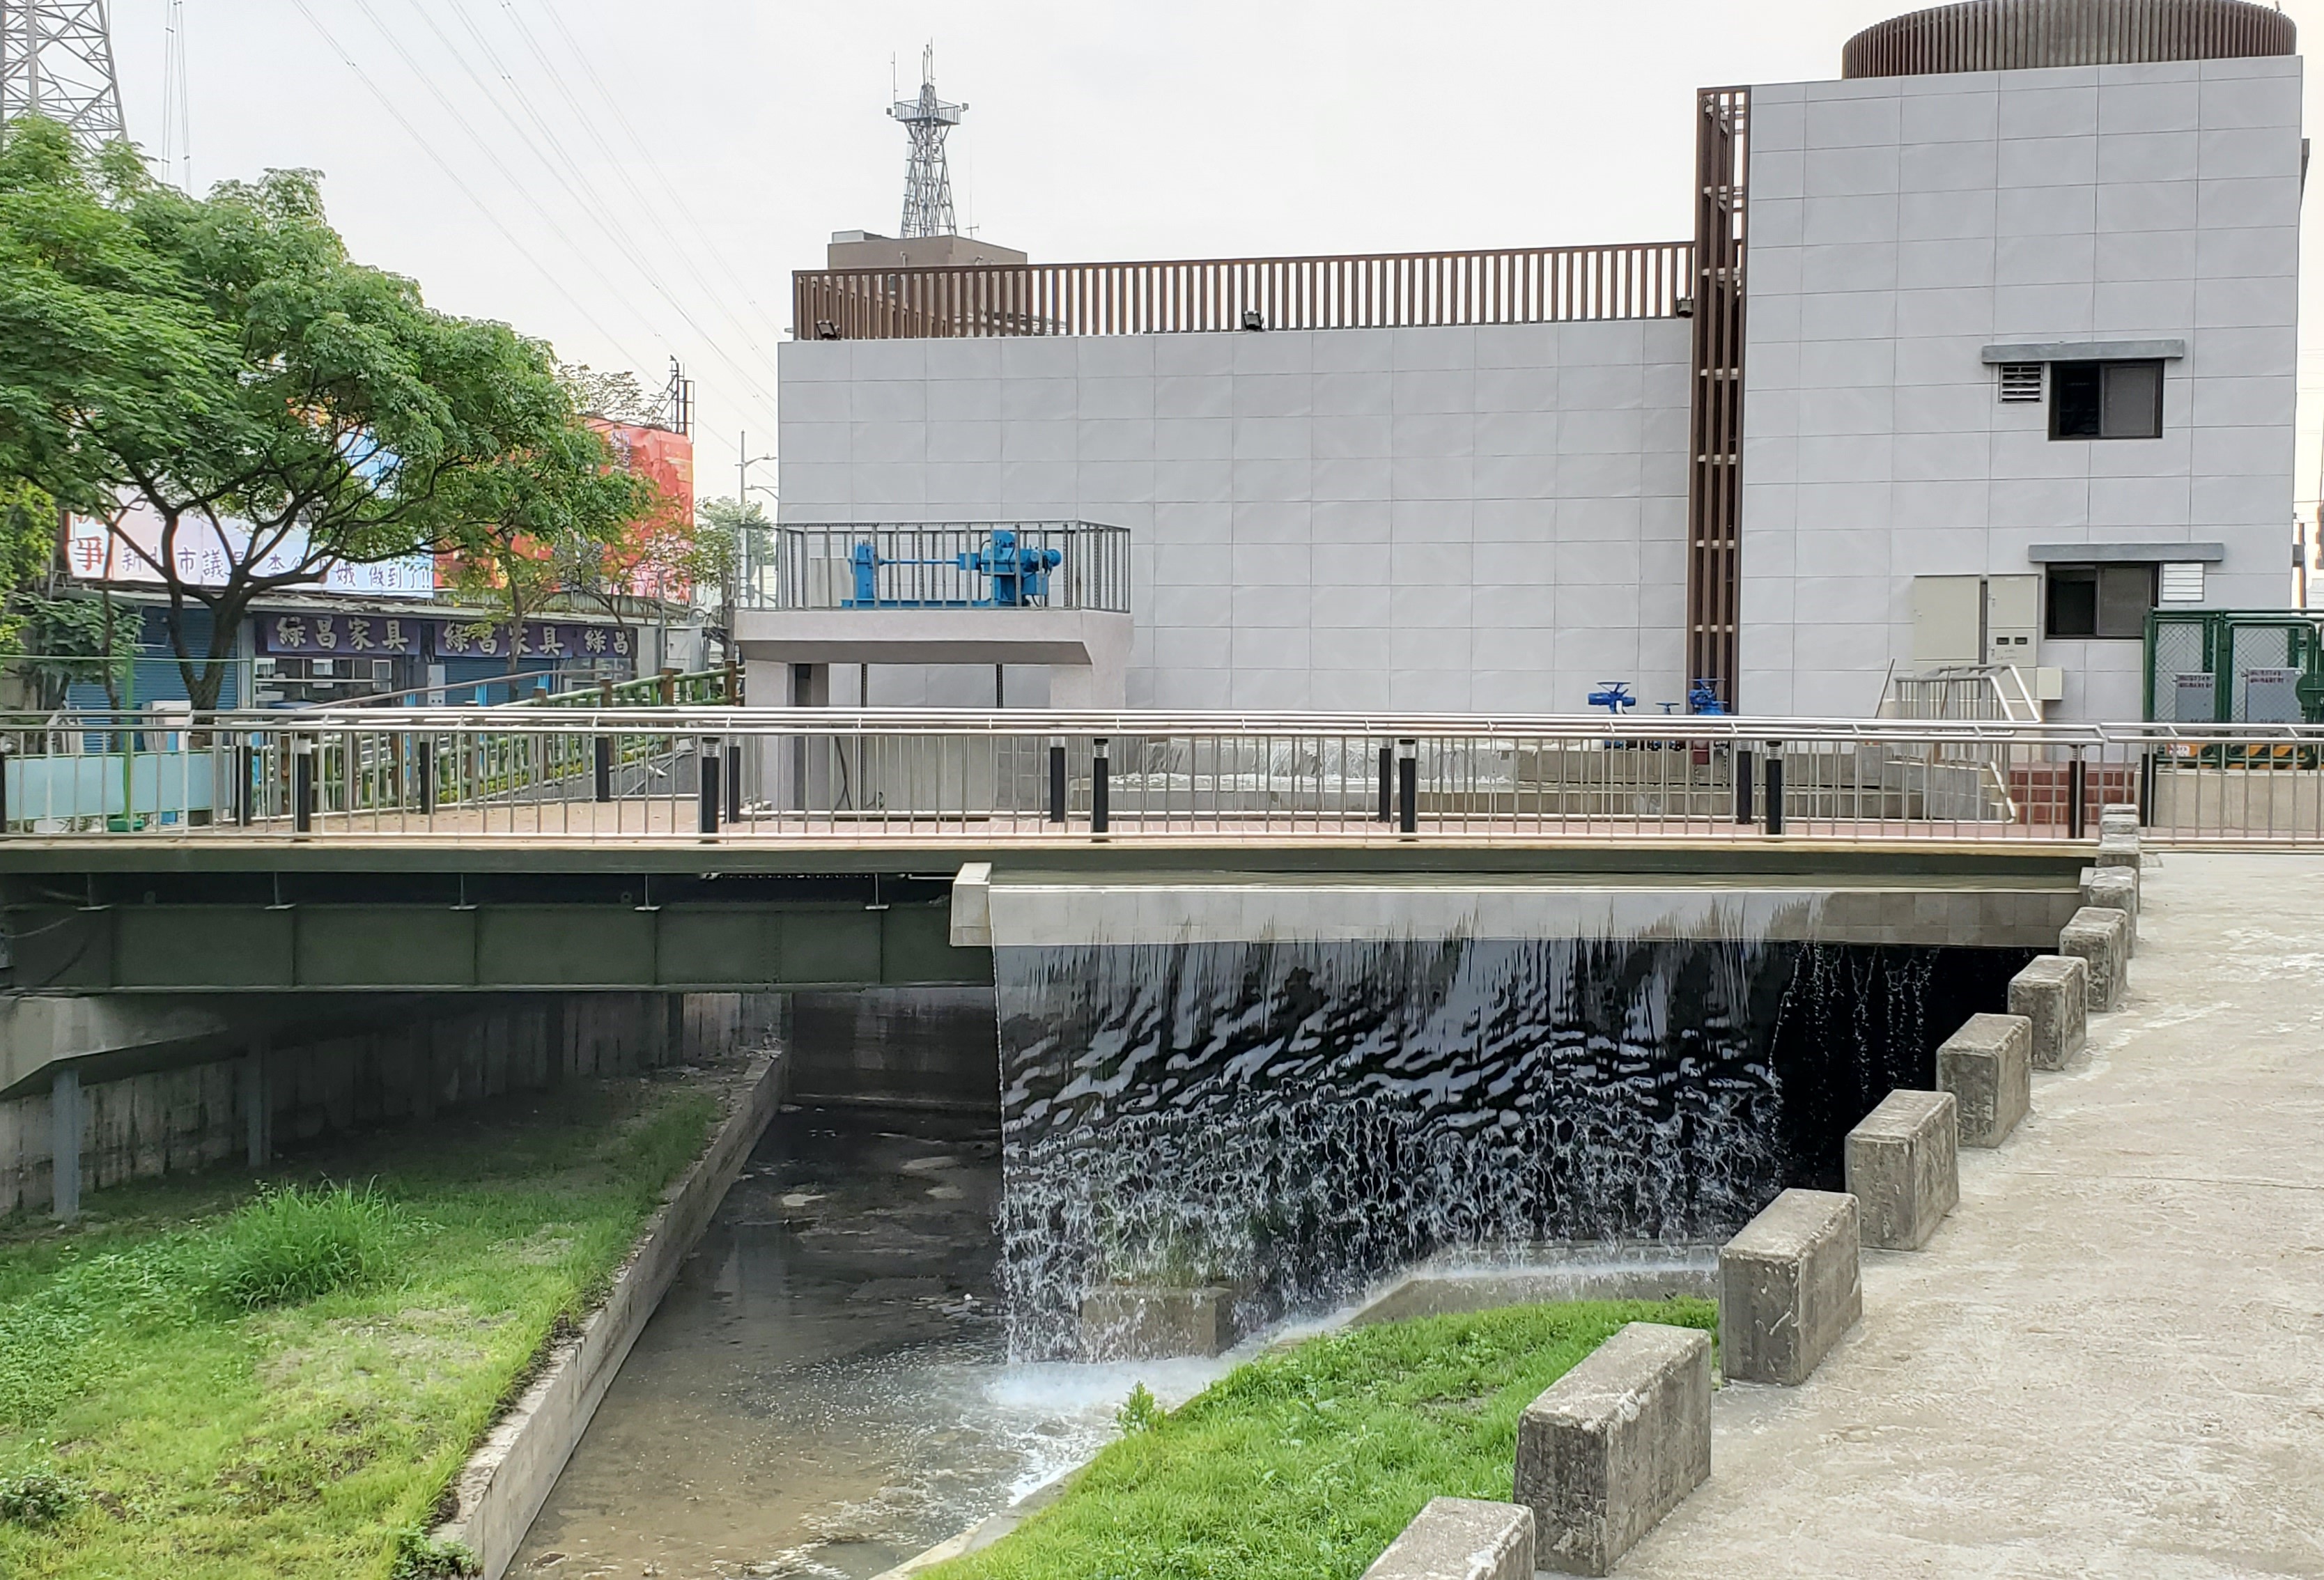 鴨母港溝景觀瀑布及補注水處理及設置控制閘門